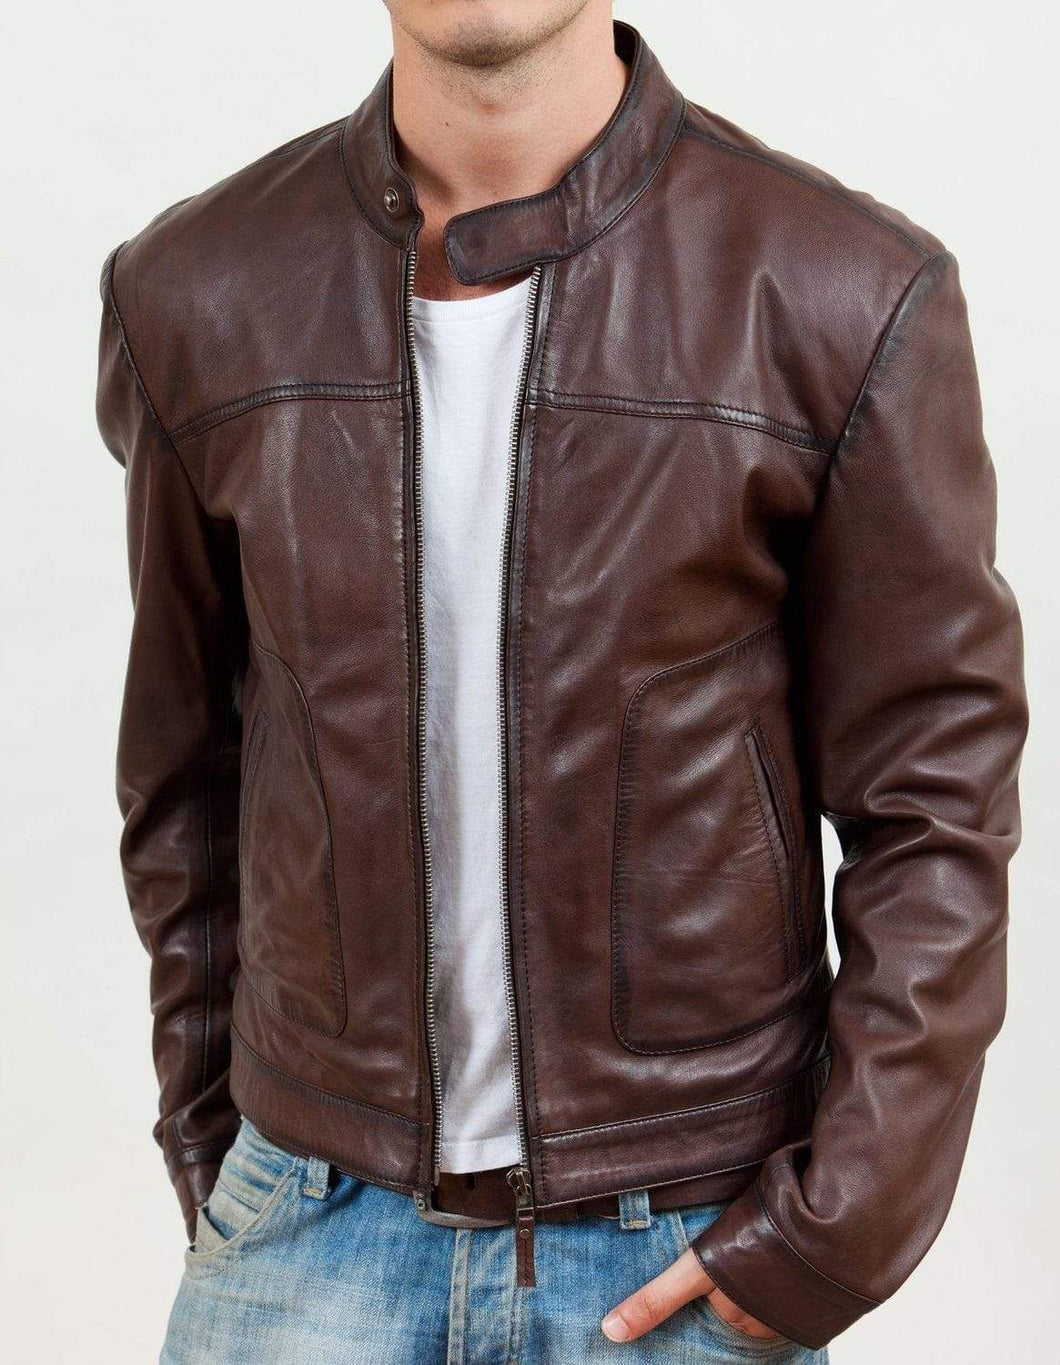 Men's Biker Motorcycle Brown Real Leather Jacket - leathersguru